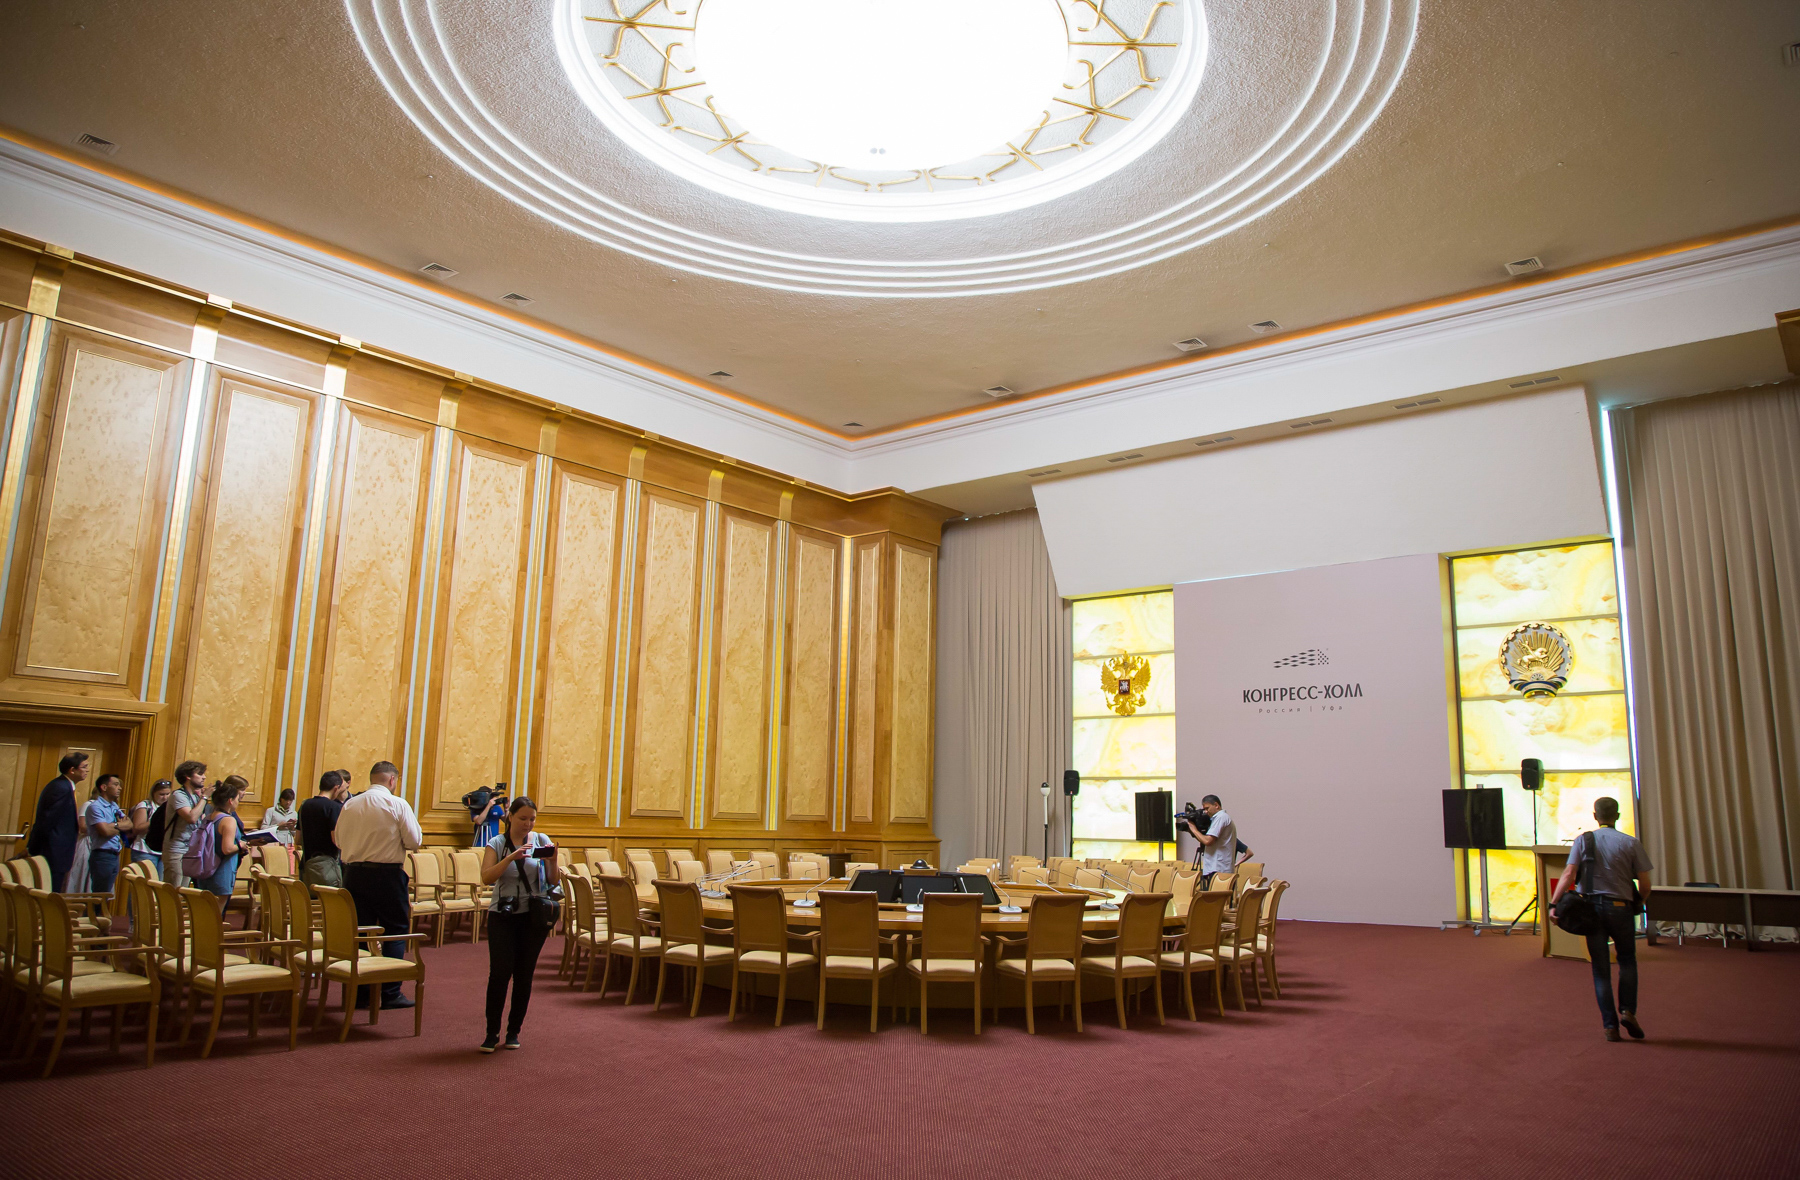 К ШОС и БРИКС в здании оборудовали порядка 30 залов для встреч и переговоров